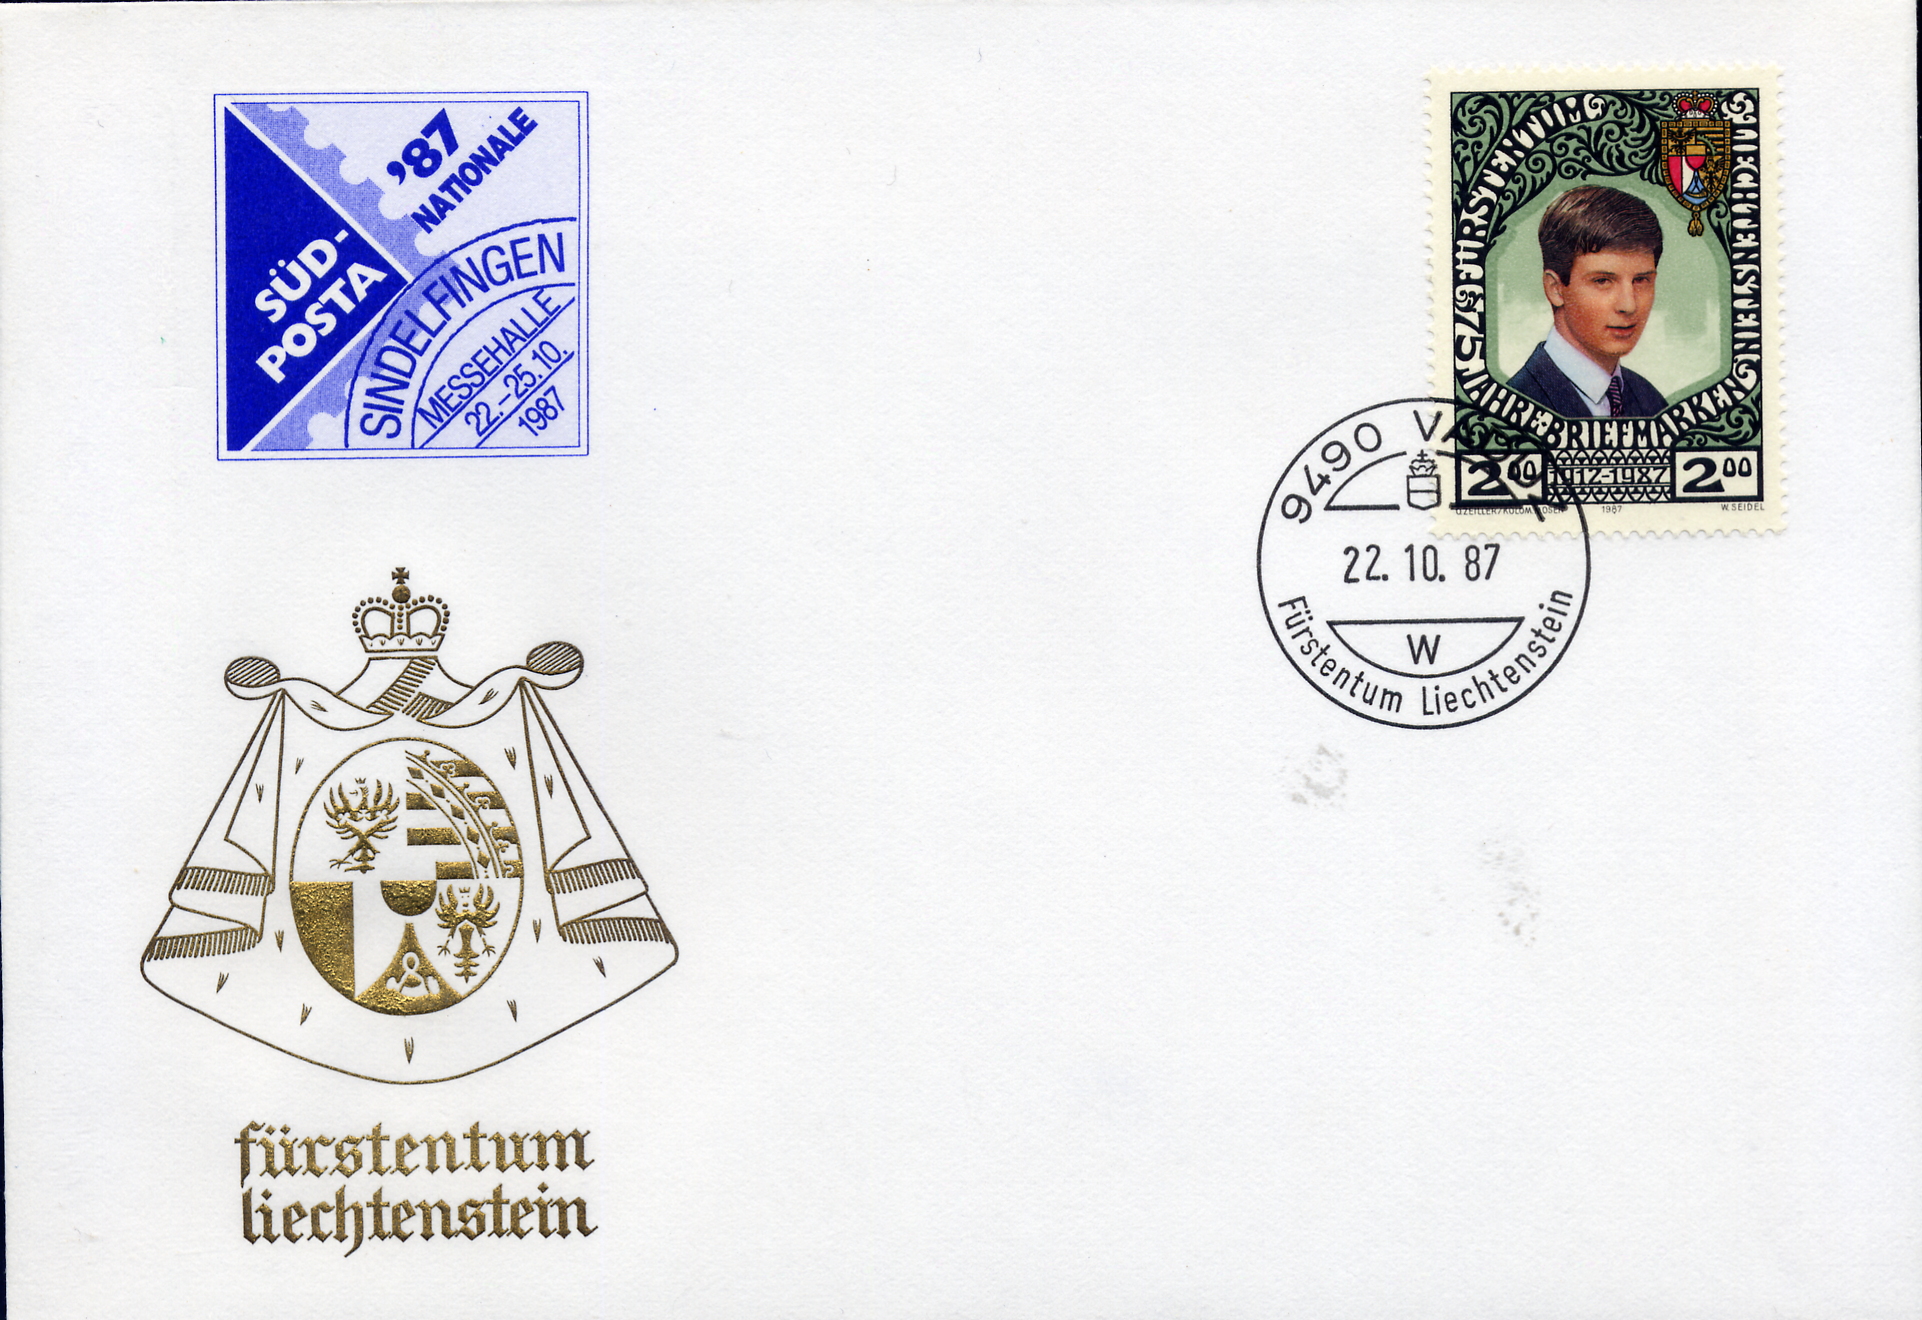 https://swiss-stamps.org/wp-content/uploads/2023/12/1987-10-Sindelfingen.jpg